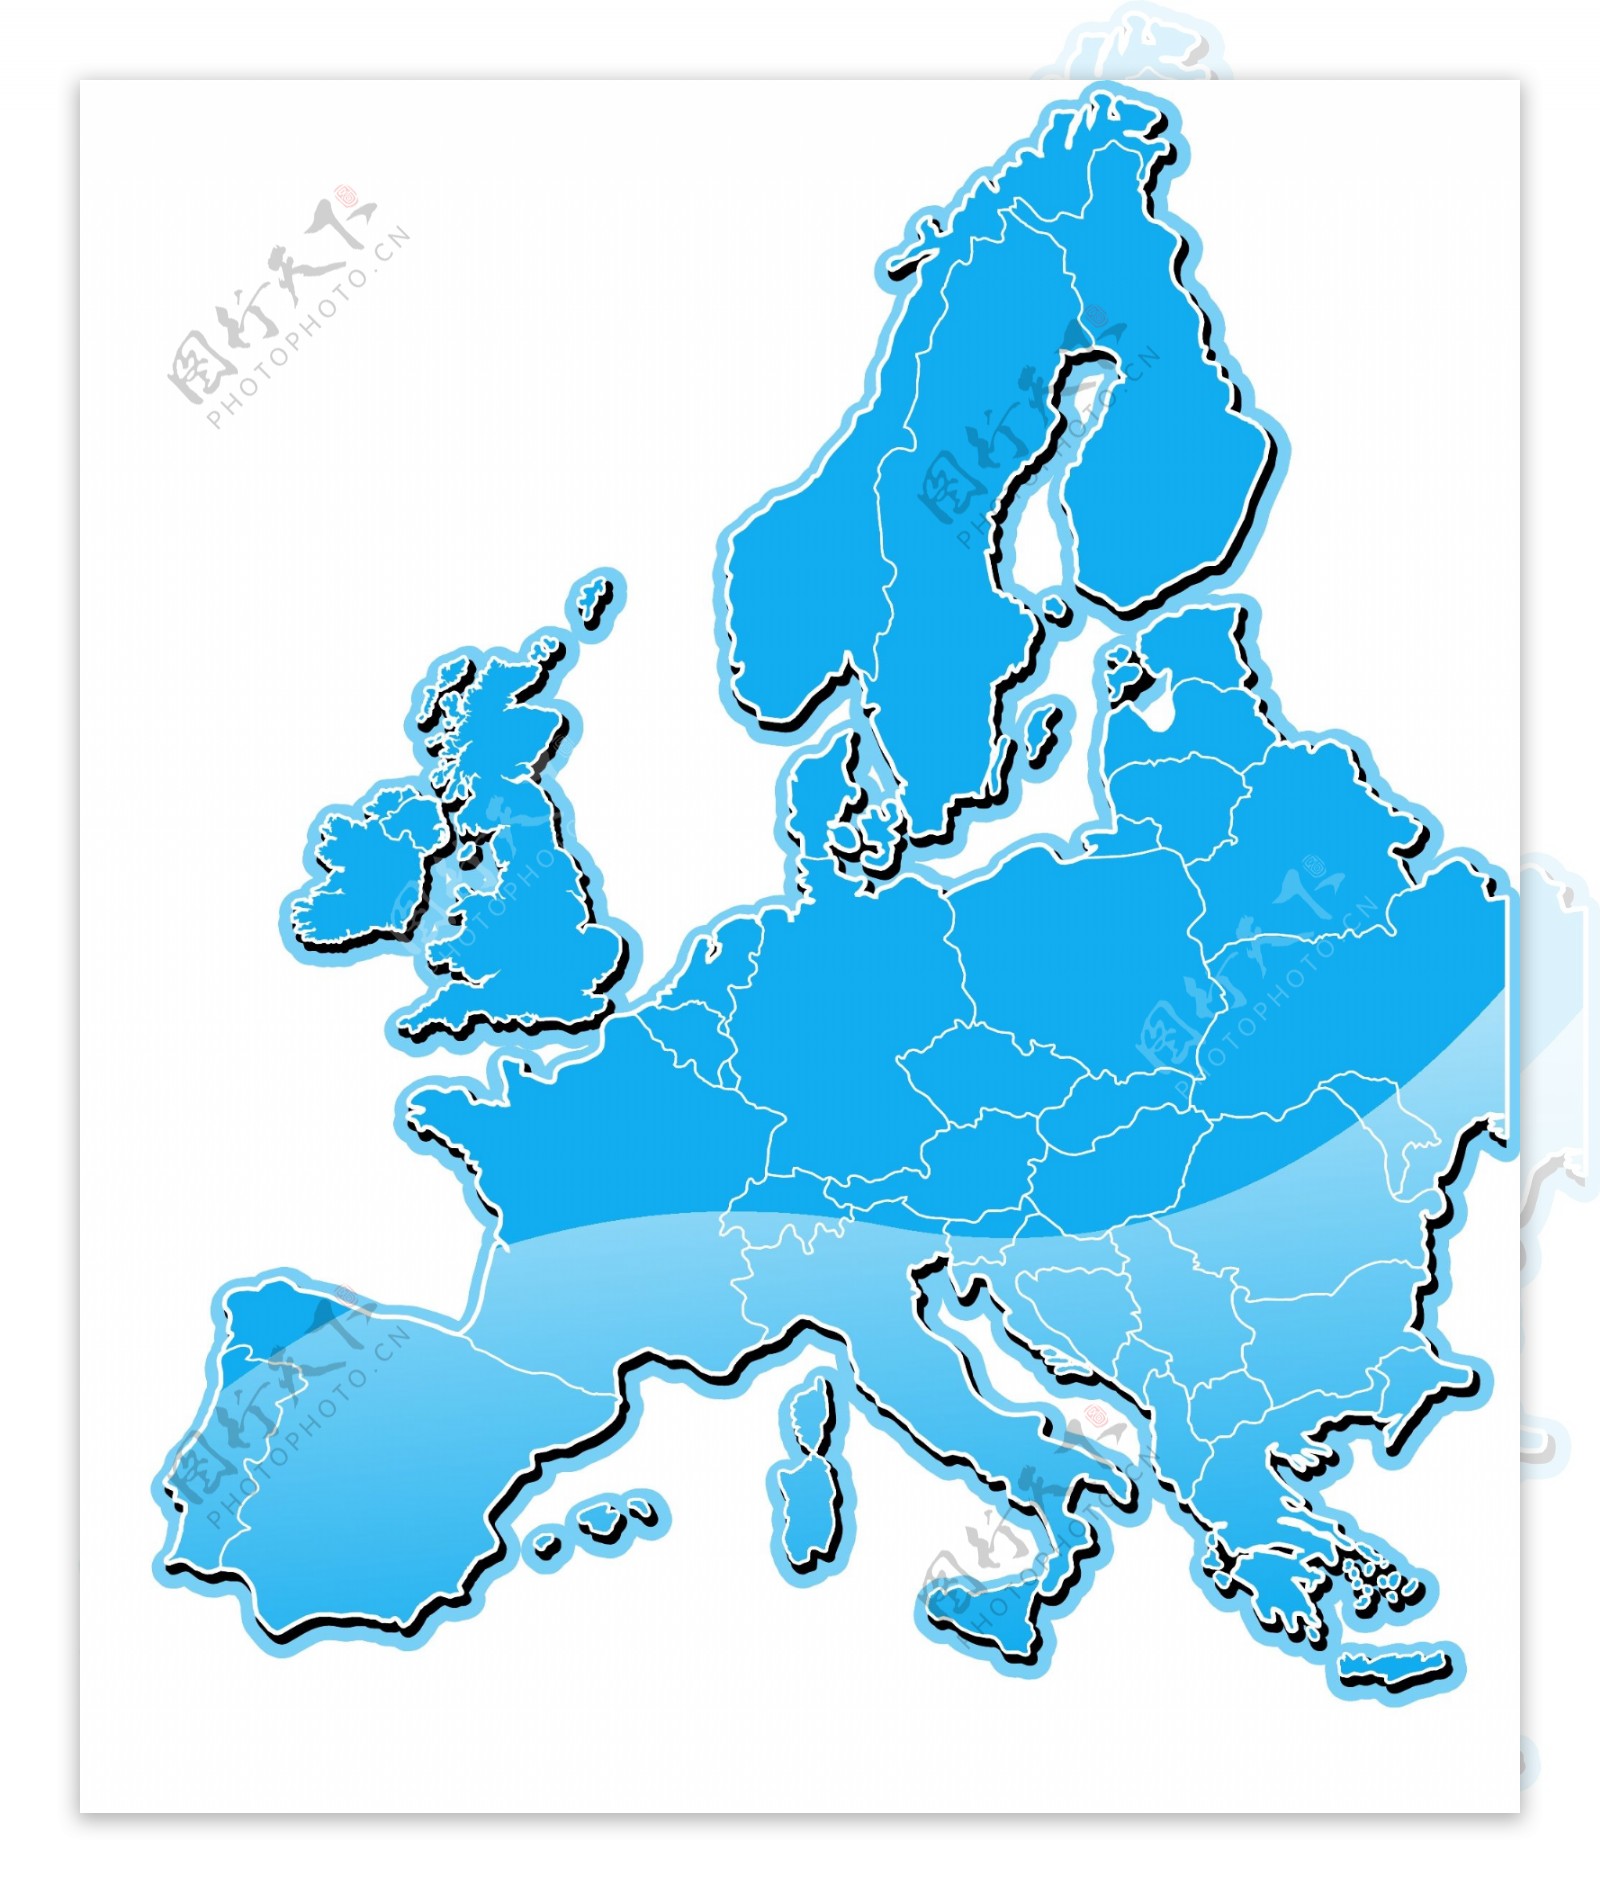 蓝水晶风格的欧洲地图矢量